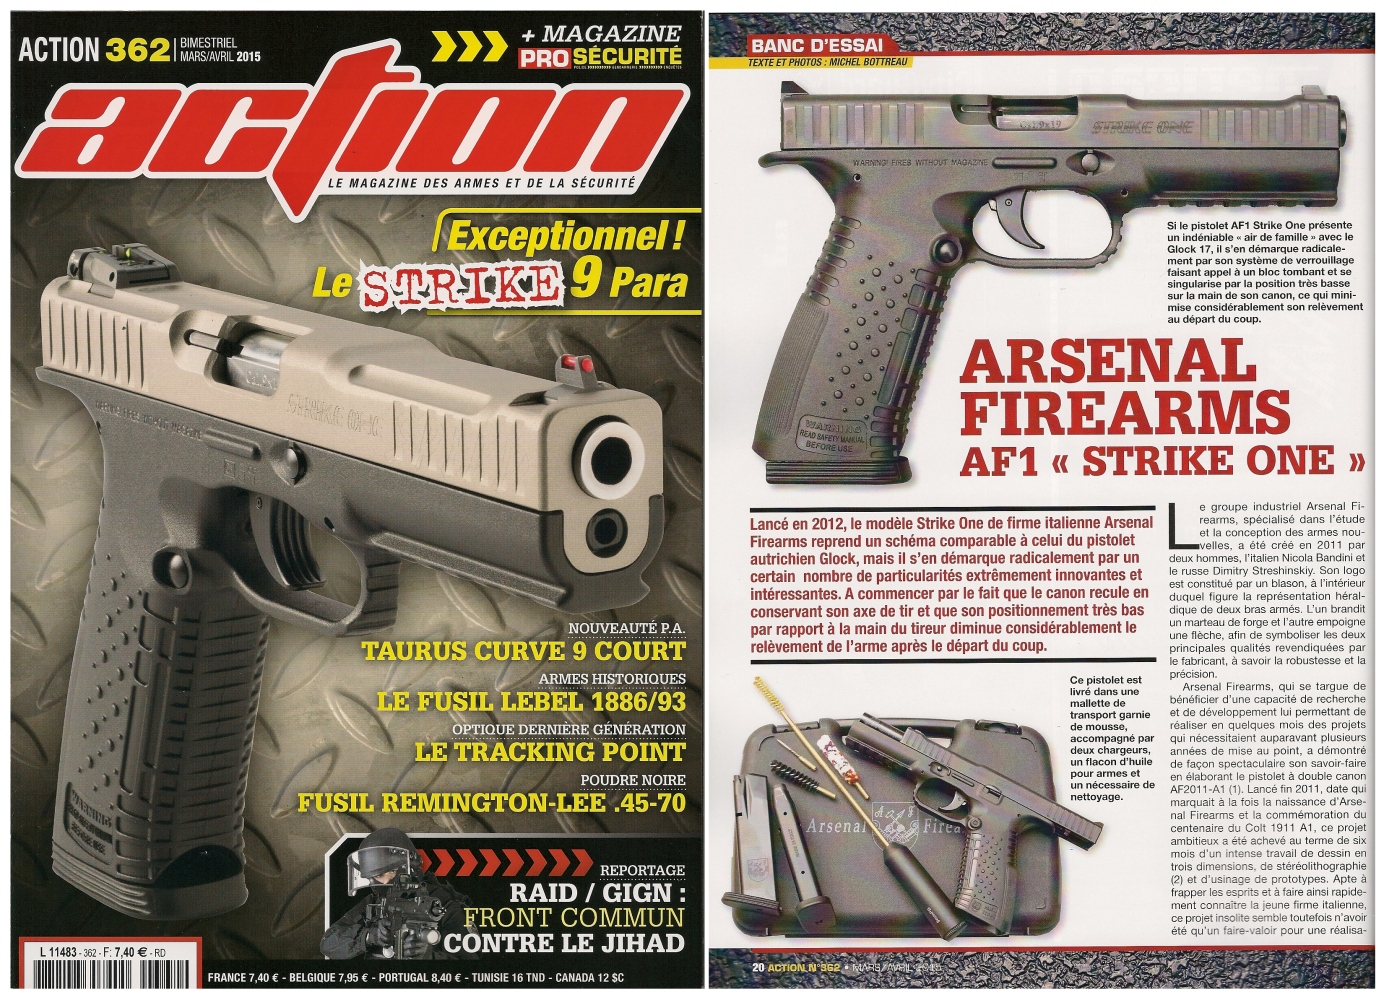 Le banc d’essai du pistolet Arsenal Firearms AF1 « Strike One » a été publié sur 6 pages dans le magazine Action n°362 (mars/avril 2015) 